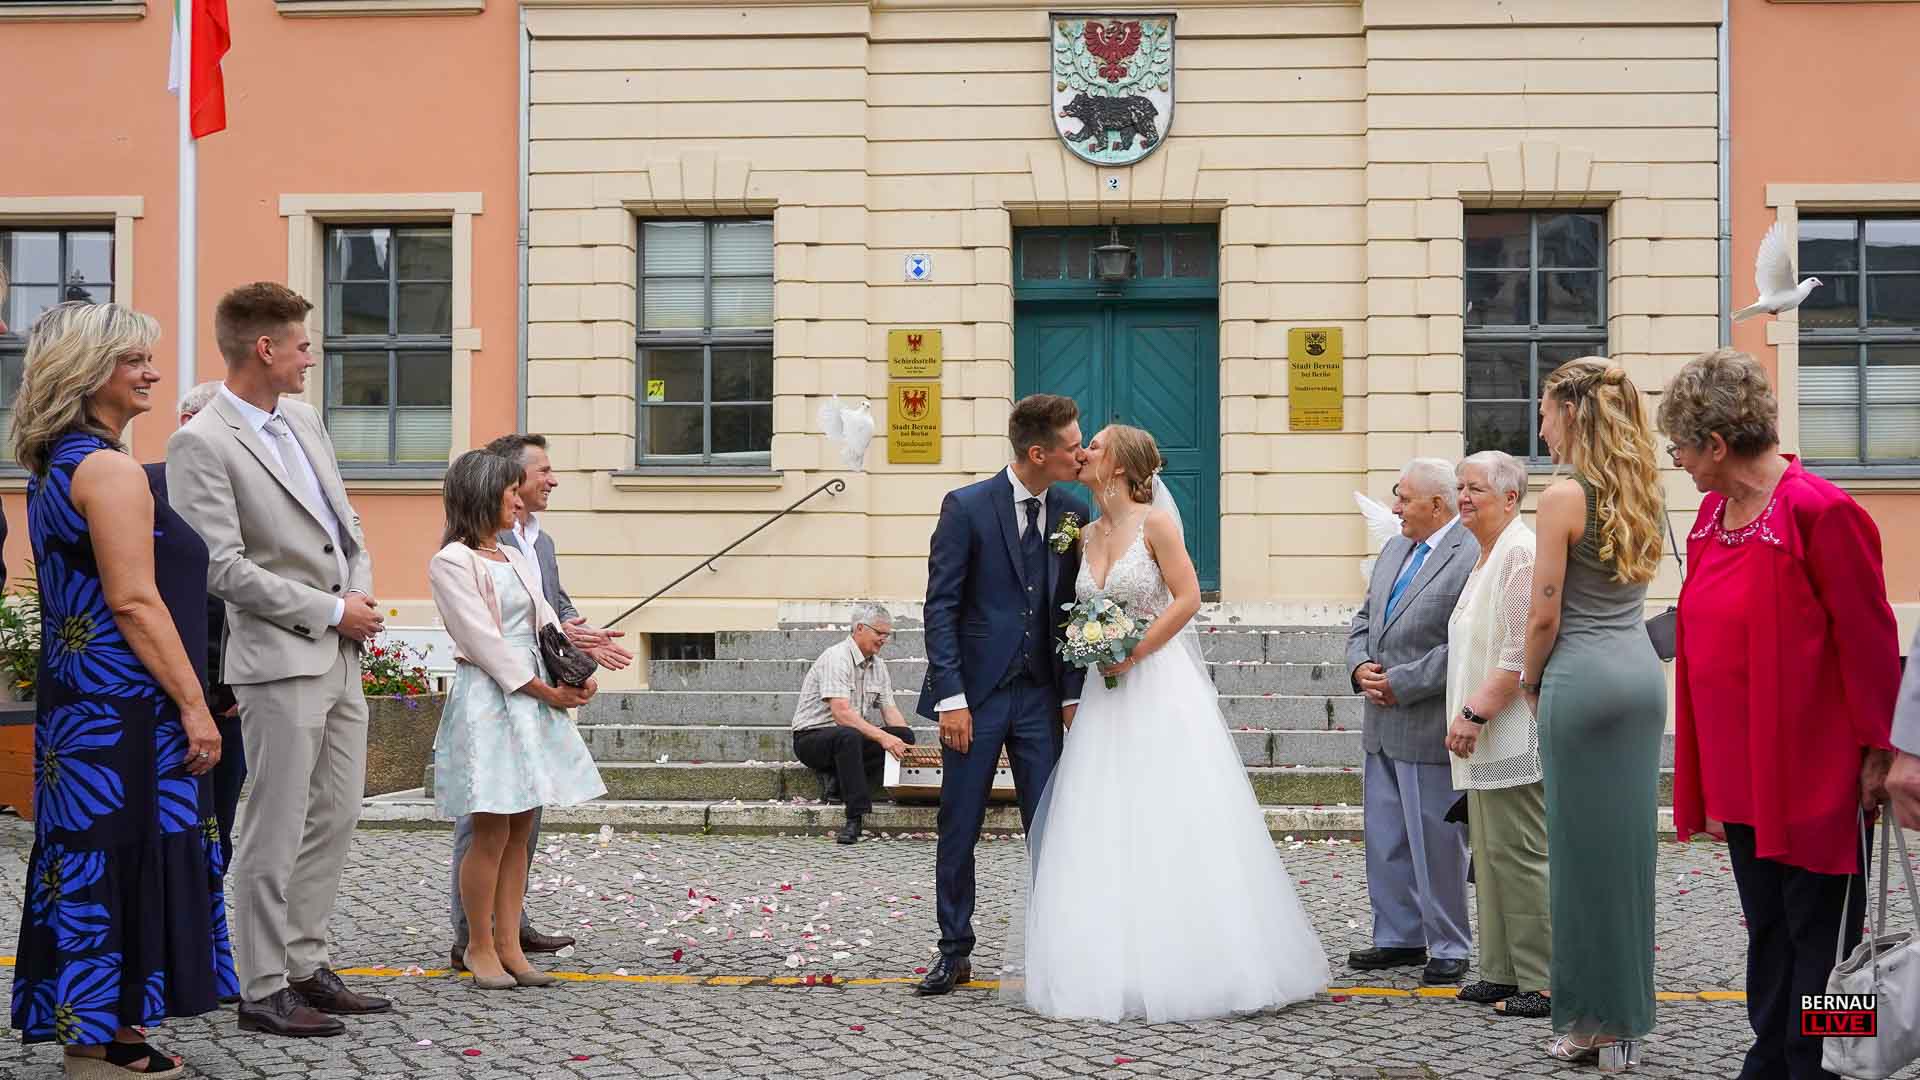 Samstagvormittag in Bernau - zwischen Hochzeit und Wilden Witwern